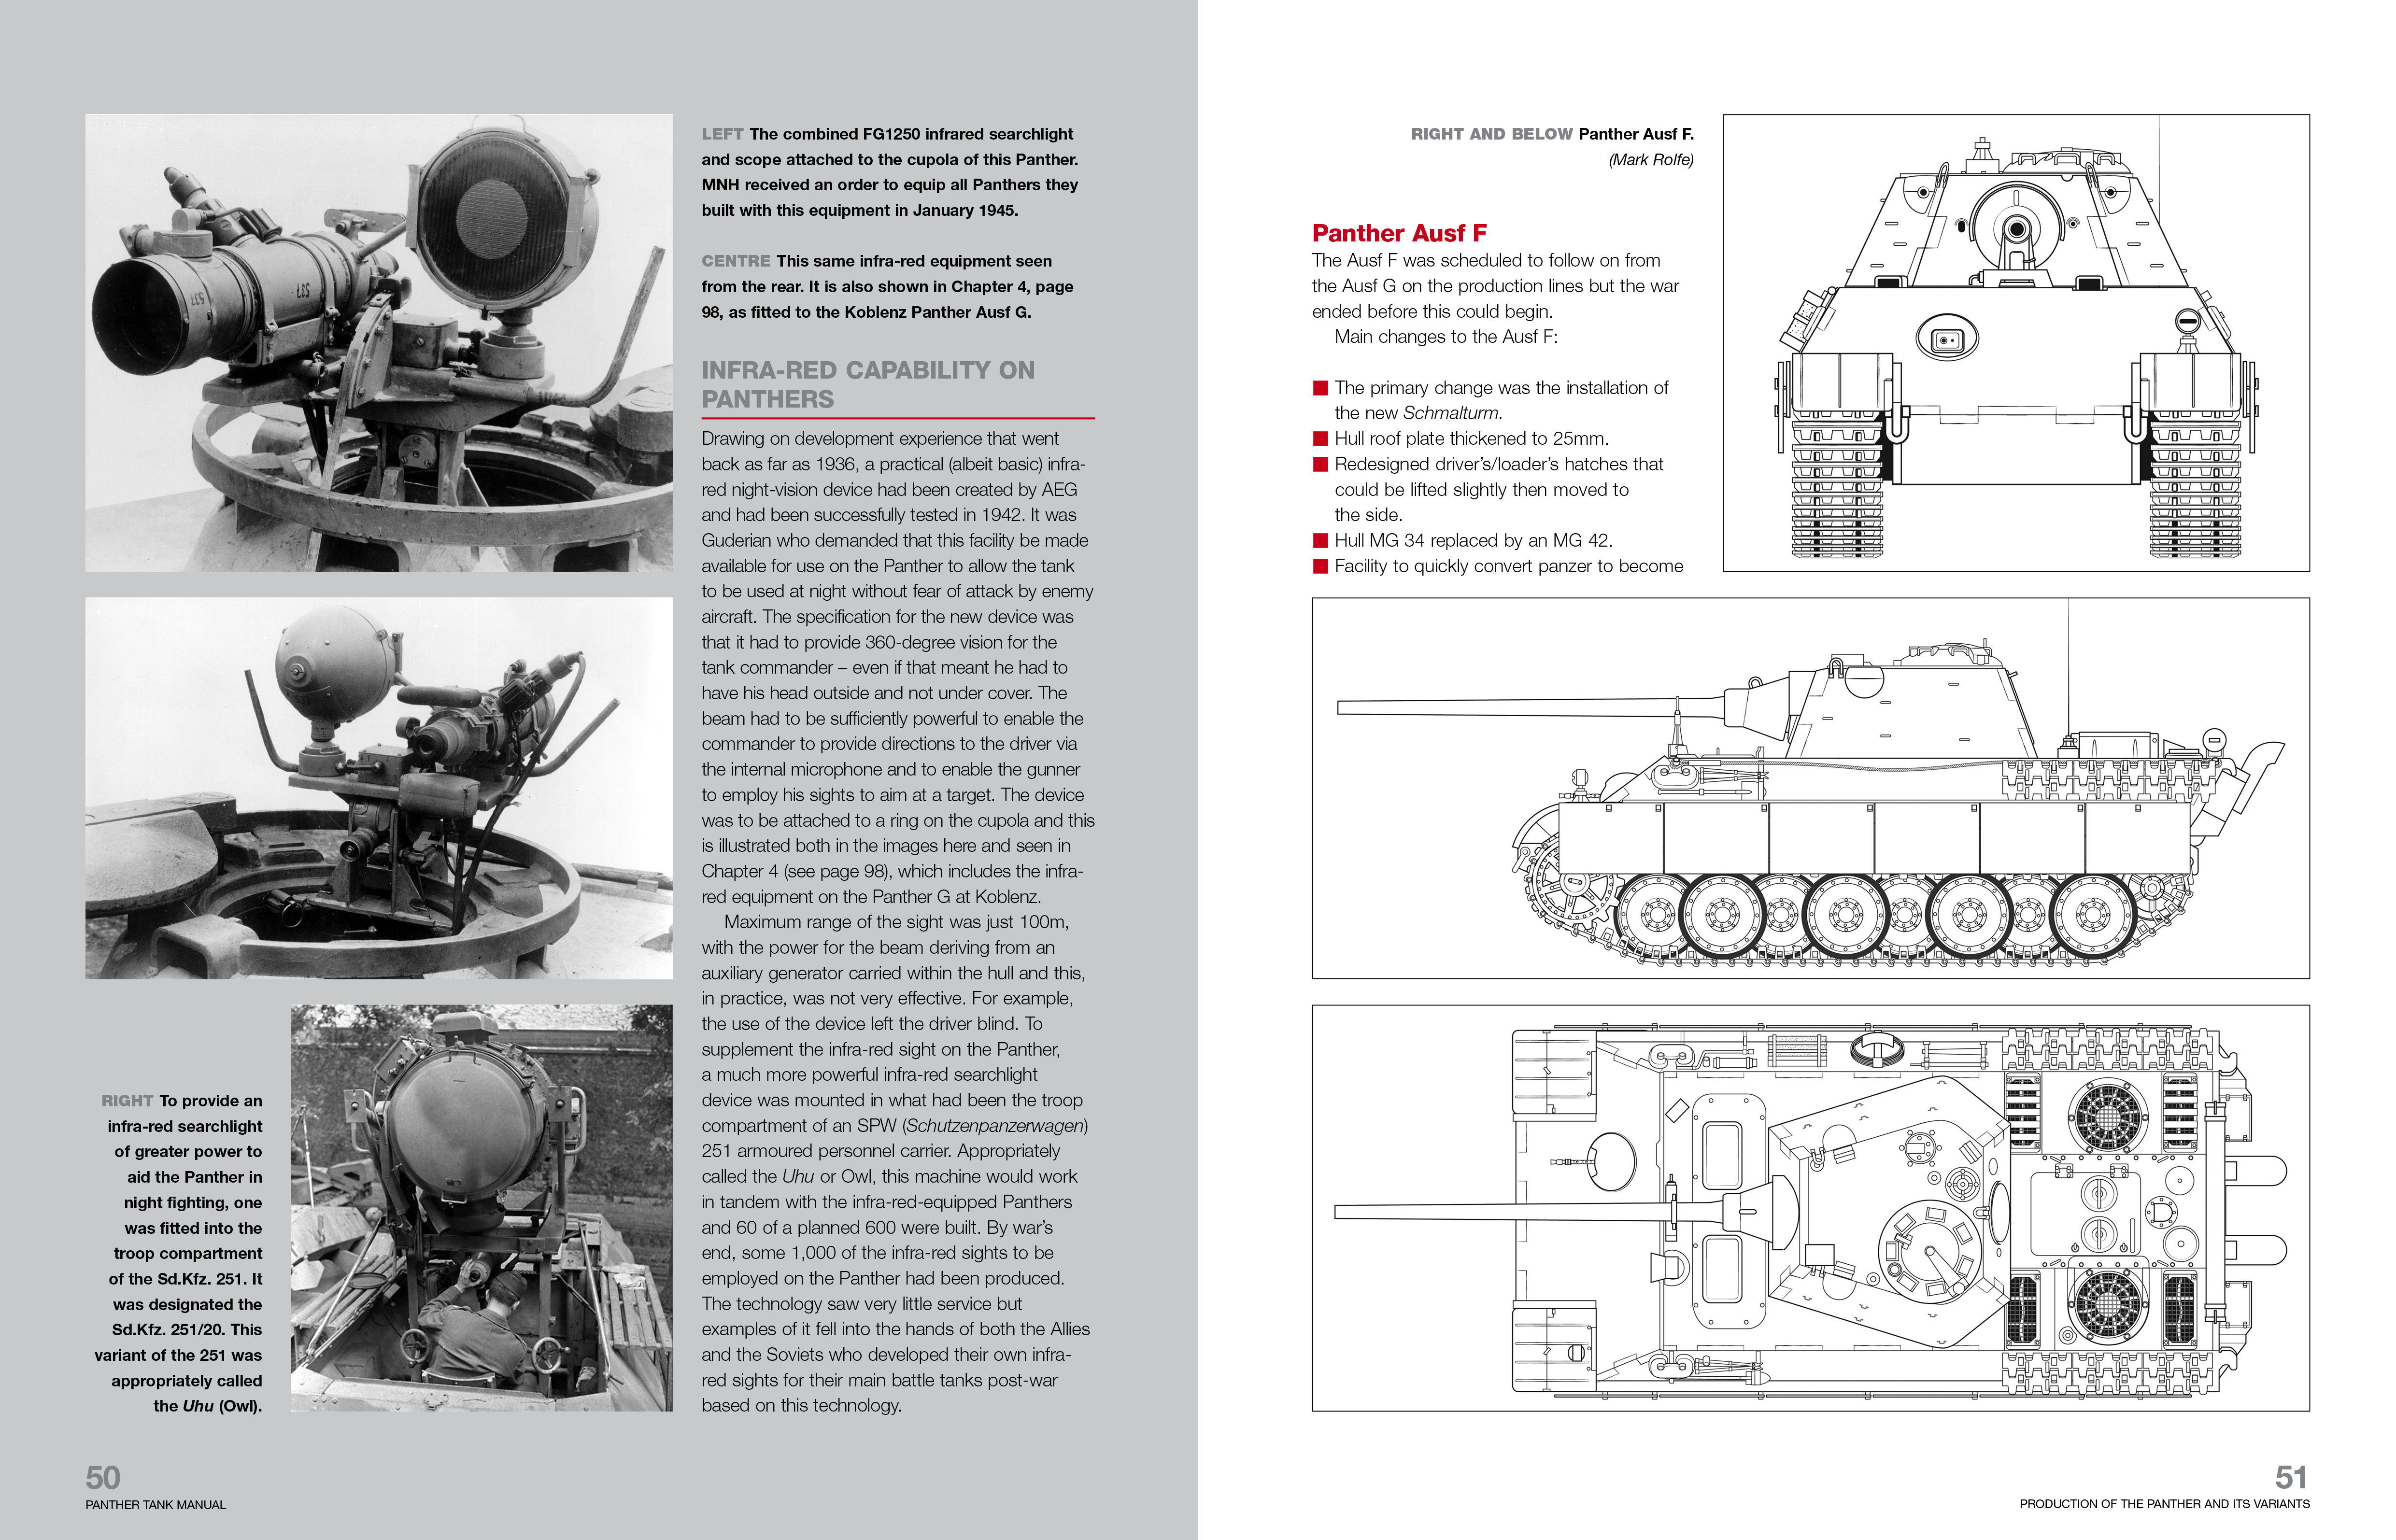 Panther Tank Enthusiasts' Manual